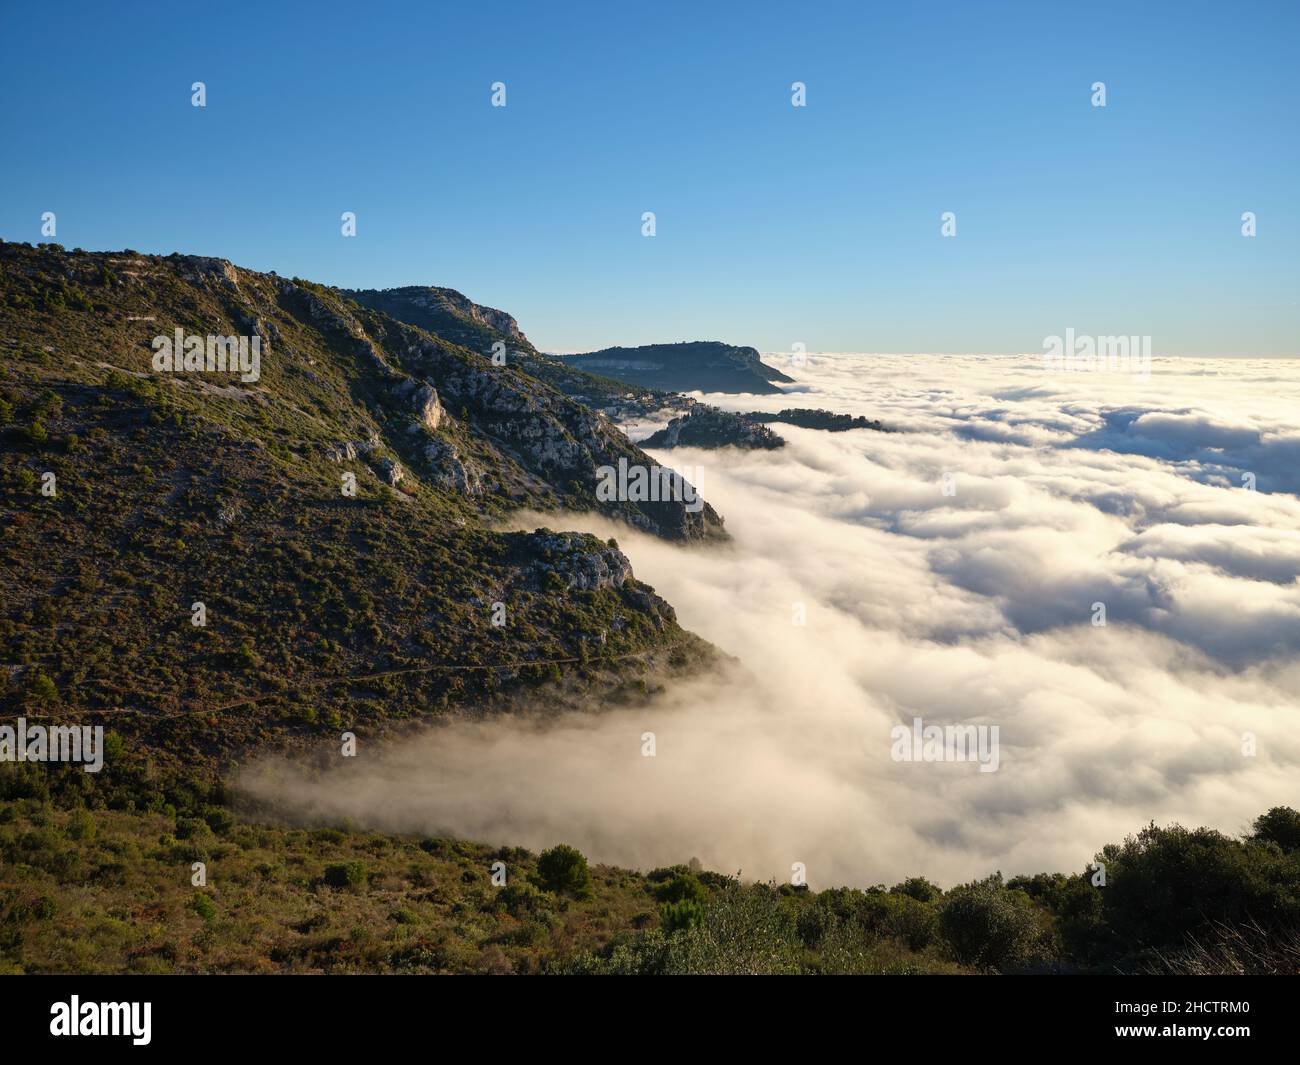 Il paesaggio montagnoso della Costa Azzurra si affaccia su un mare di nuvole sopra il Mar Mediterraneo; un evento molto raro. Èze-Village, Francia. Foto Stock